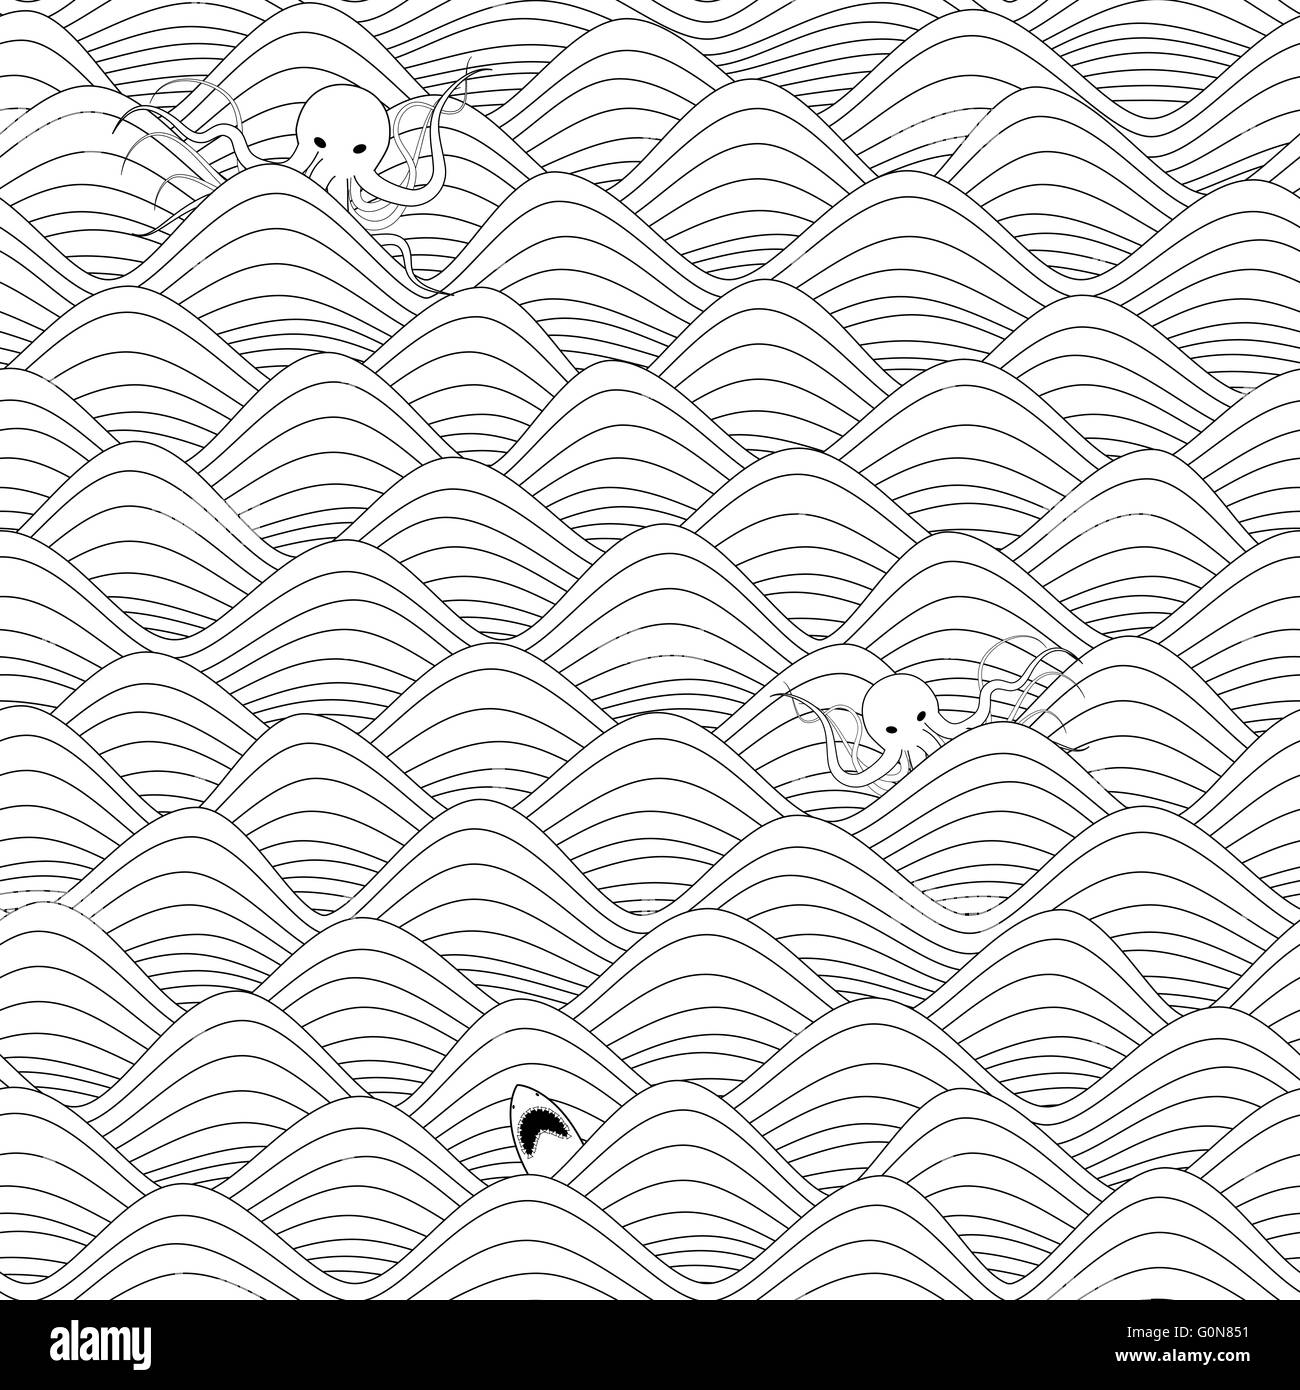 wiederholbare nahtlose grafischen Hintergrund mit Wellen, Riesenkraken und weiße Haie in schwarz / weiß Stockfoto